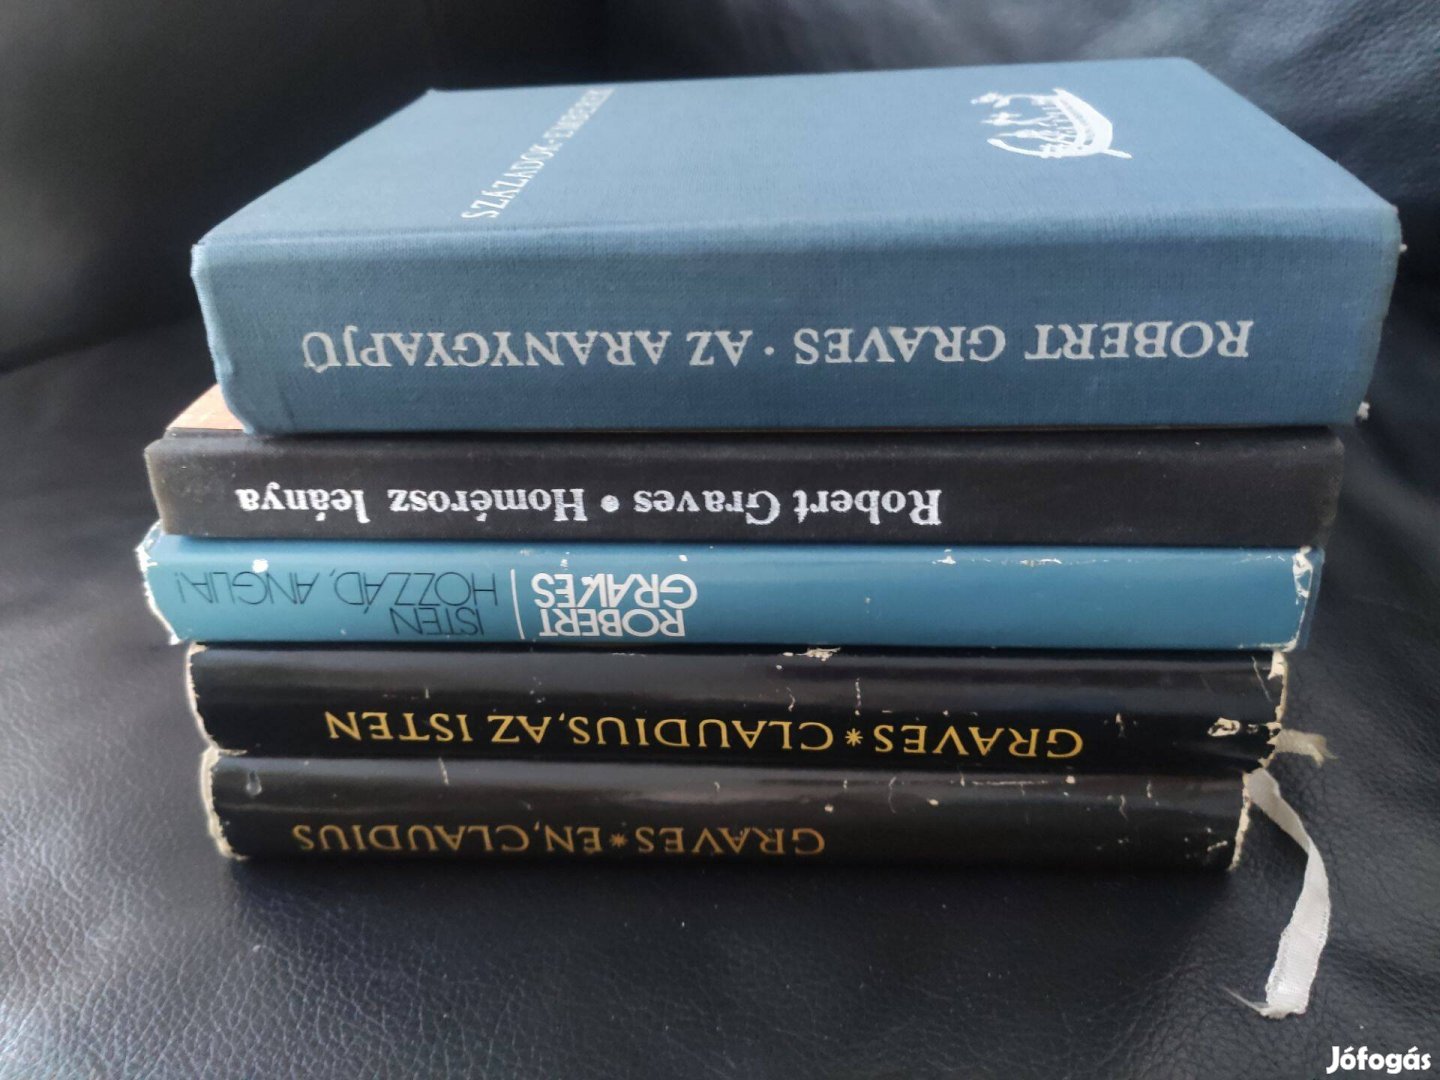 Robert Graves regények - 5 db könyv